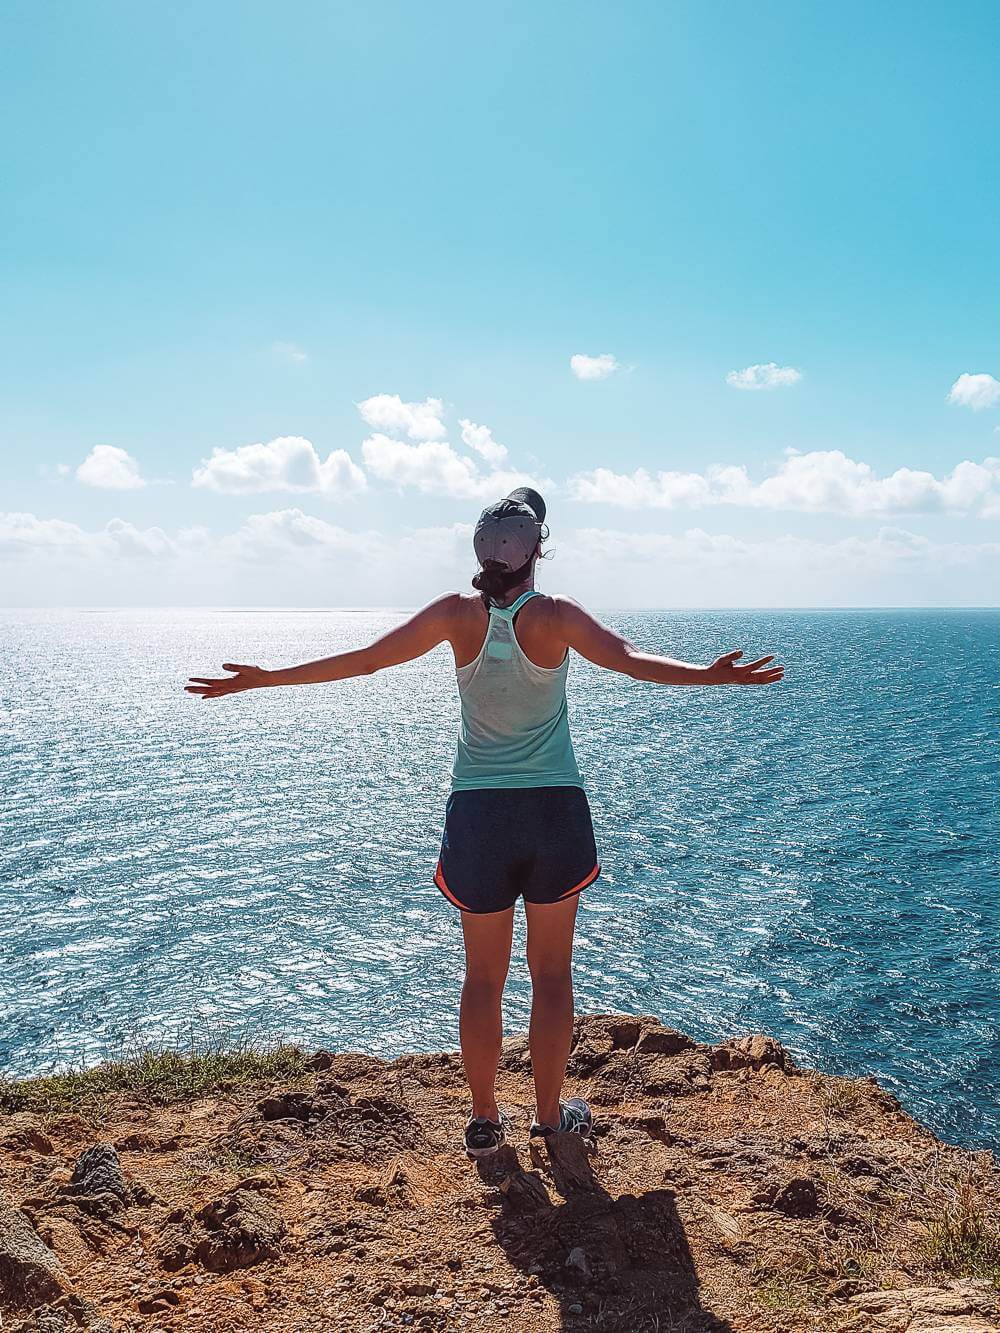  девушка, стоящая в конце тропы Баран-Хед с видом на голубые карибские воды острова Сент-Джон, США 